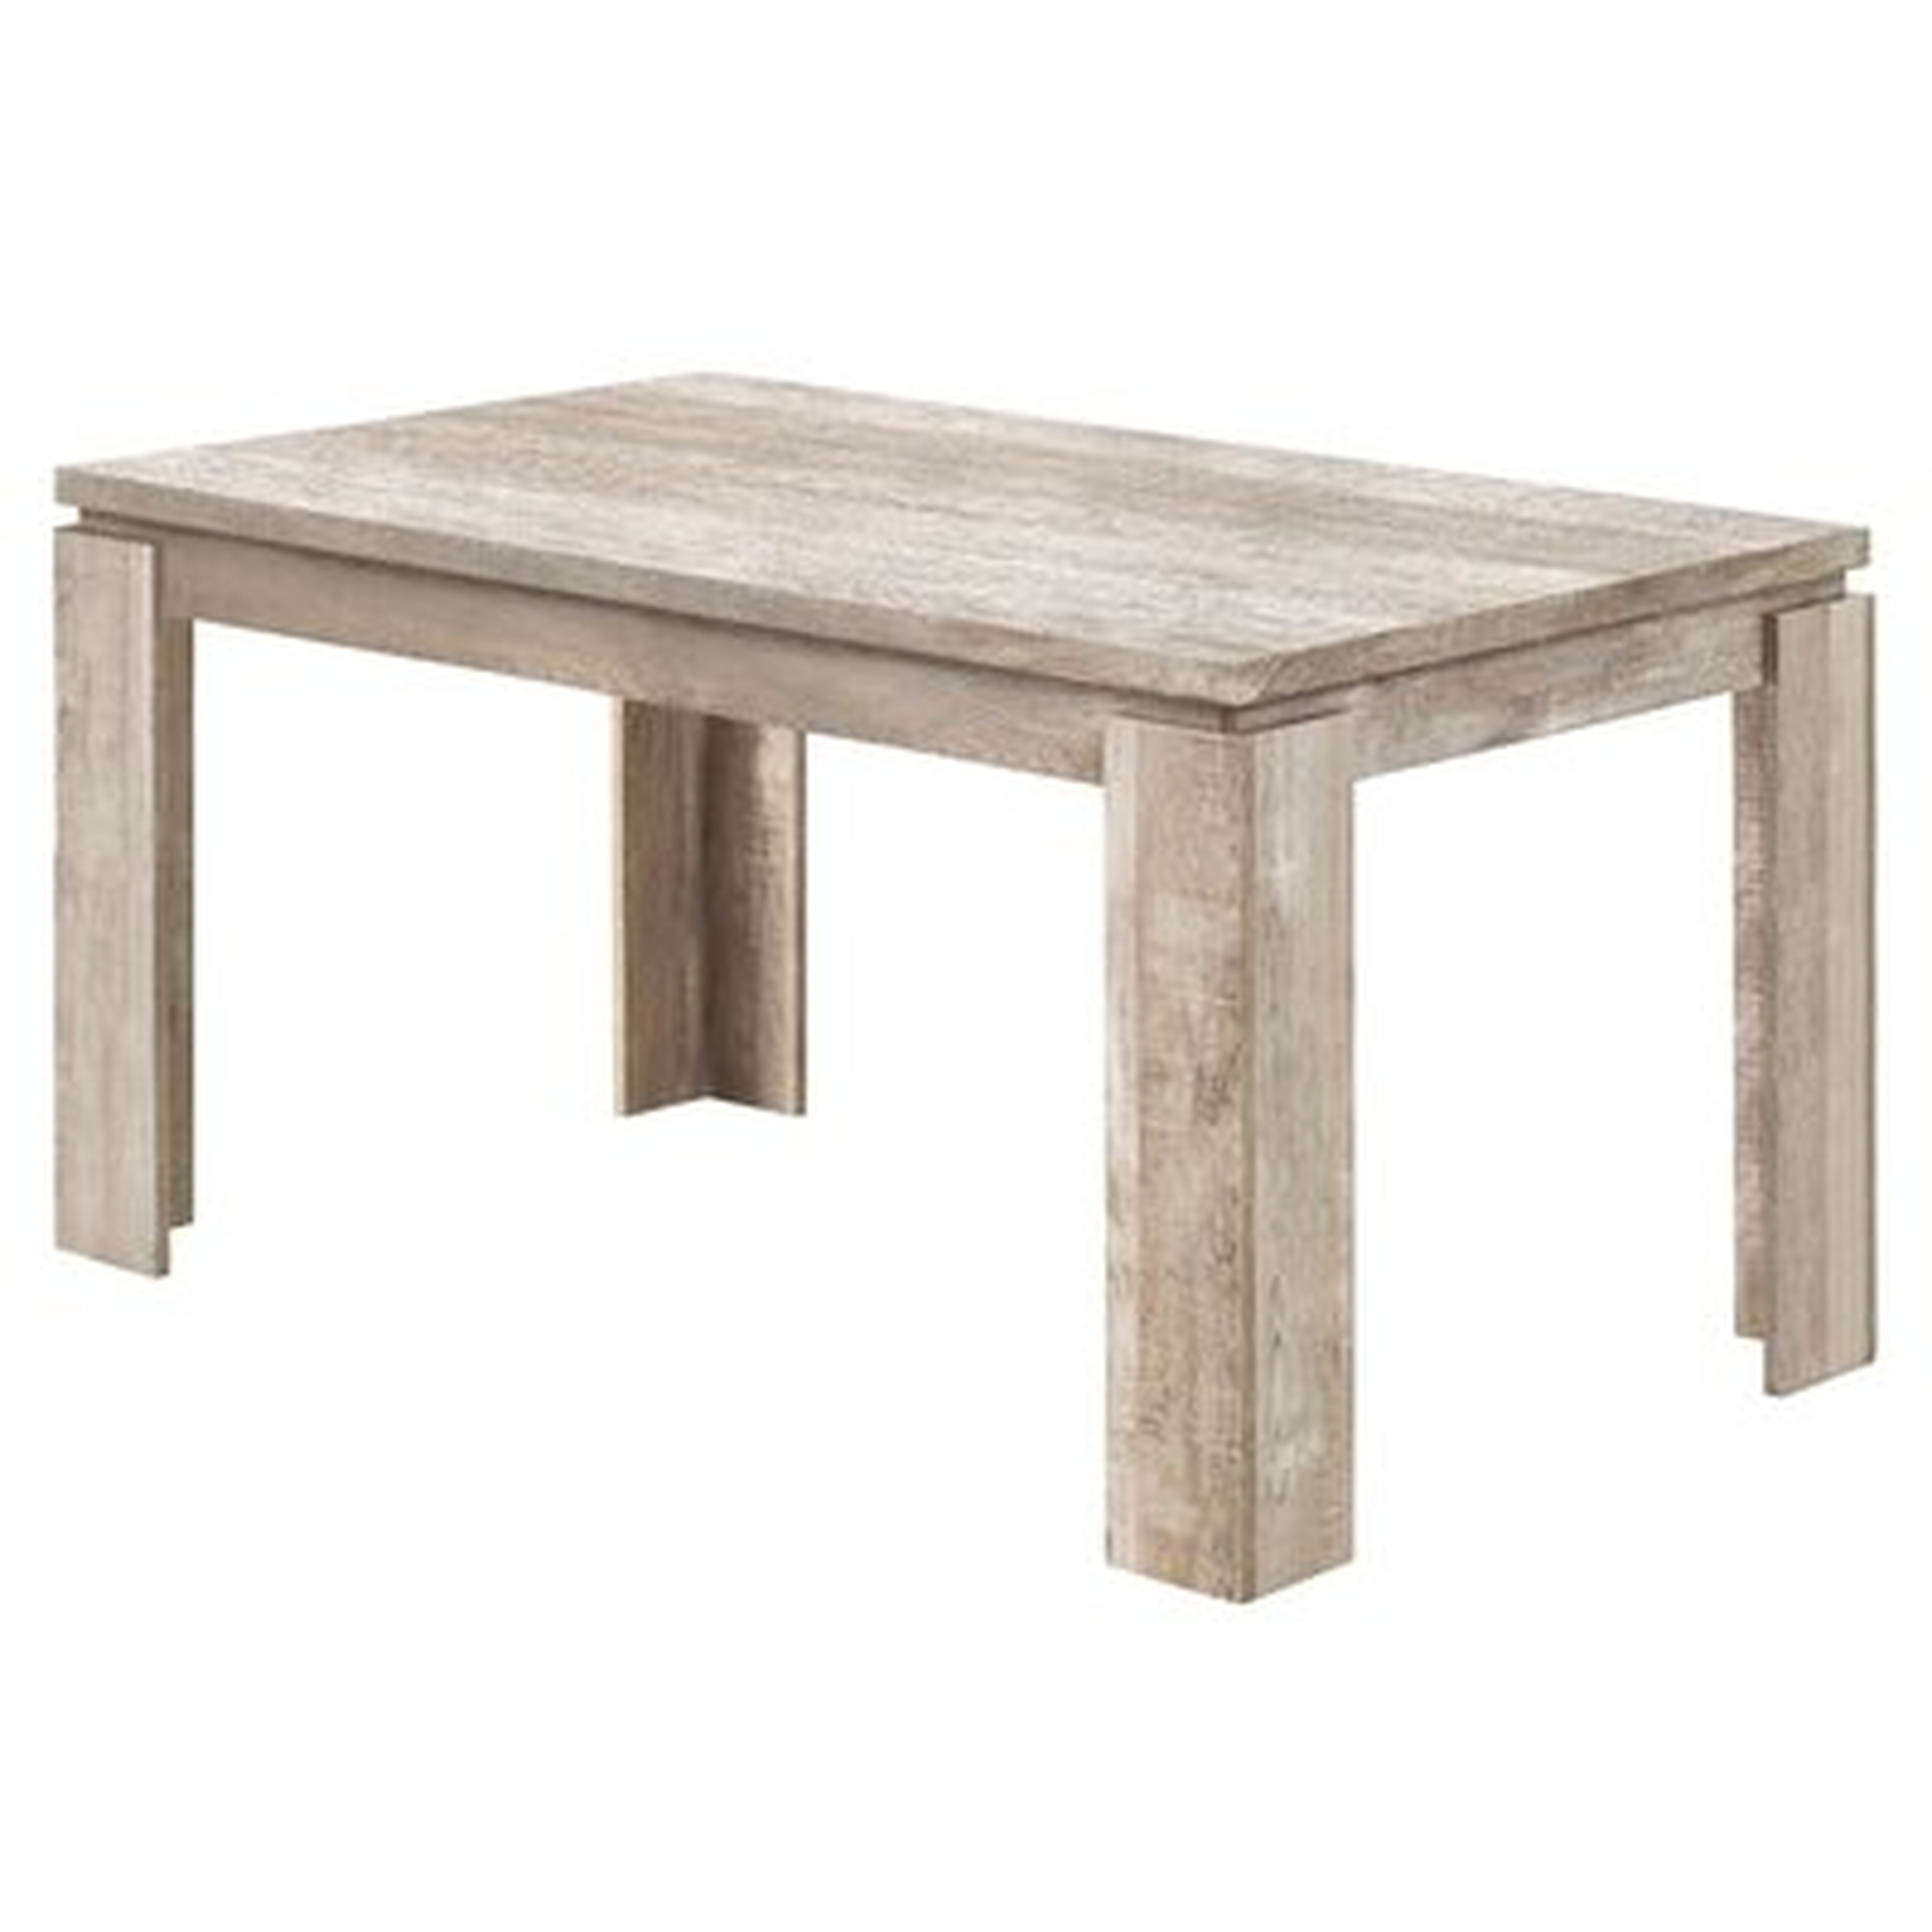 Dining Table - 36"X 60" / Brown Reclaimed Wood-Look - Wayfair